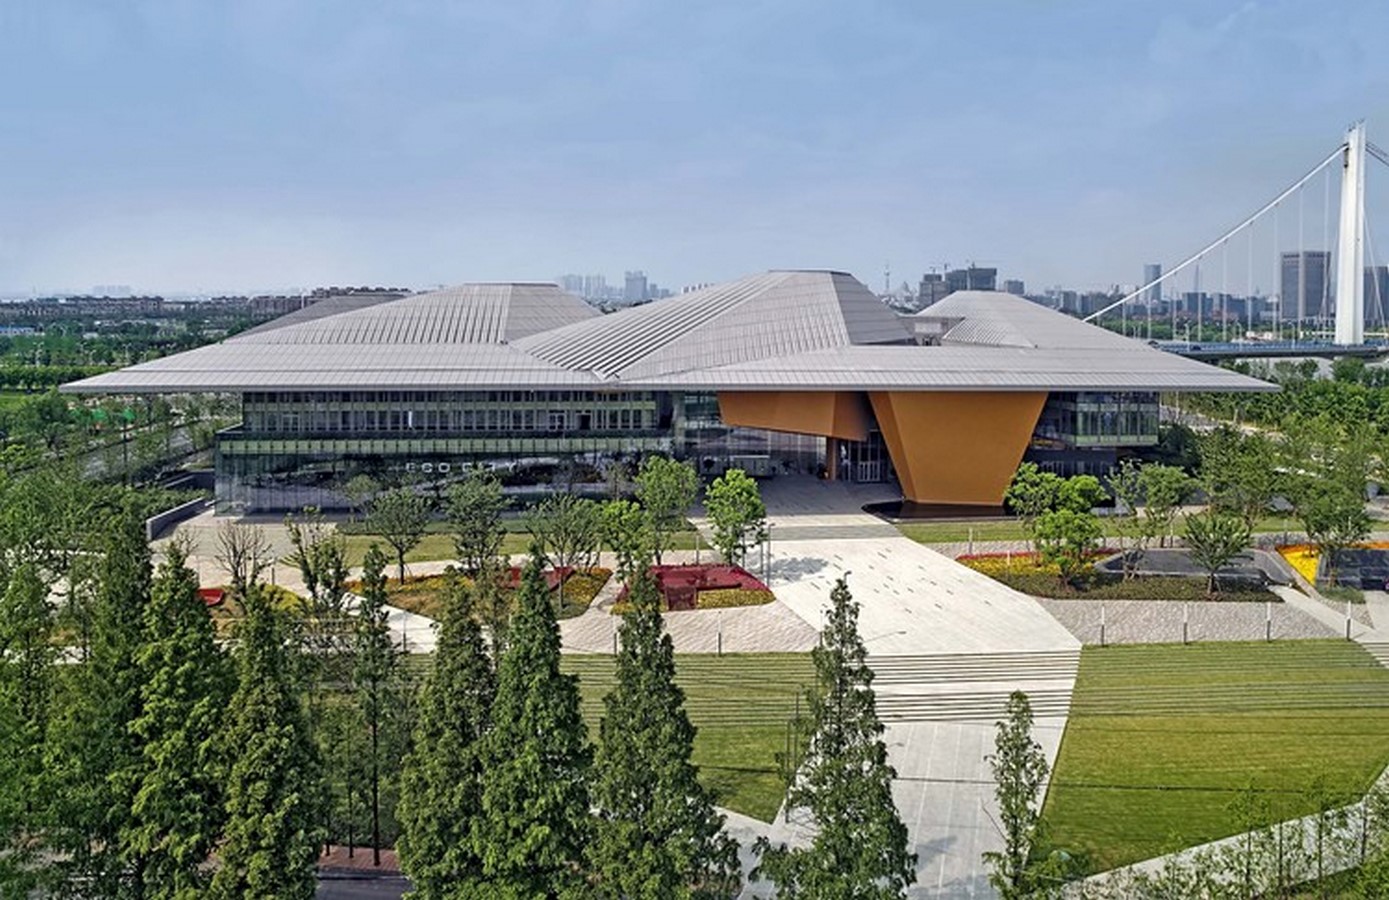 Xin Wei Yi Technology Park by NBBJ - Sheet1